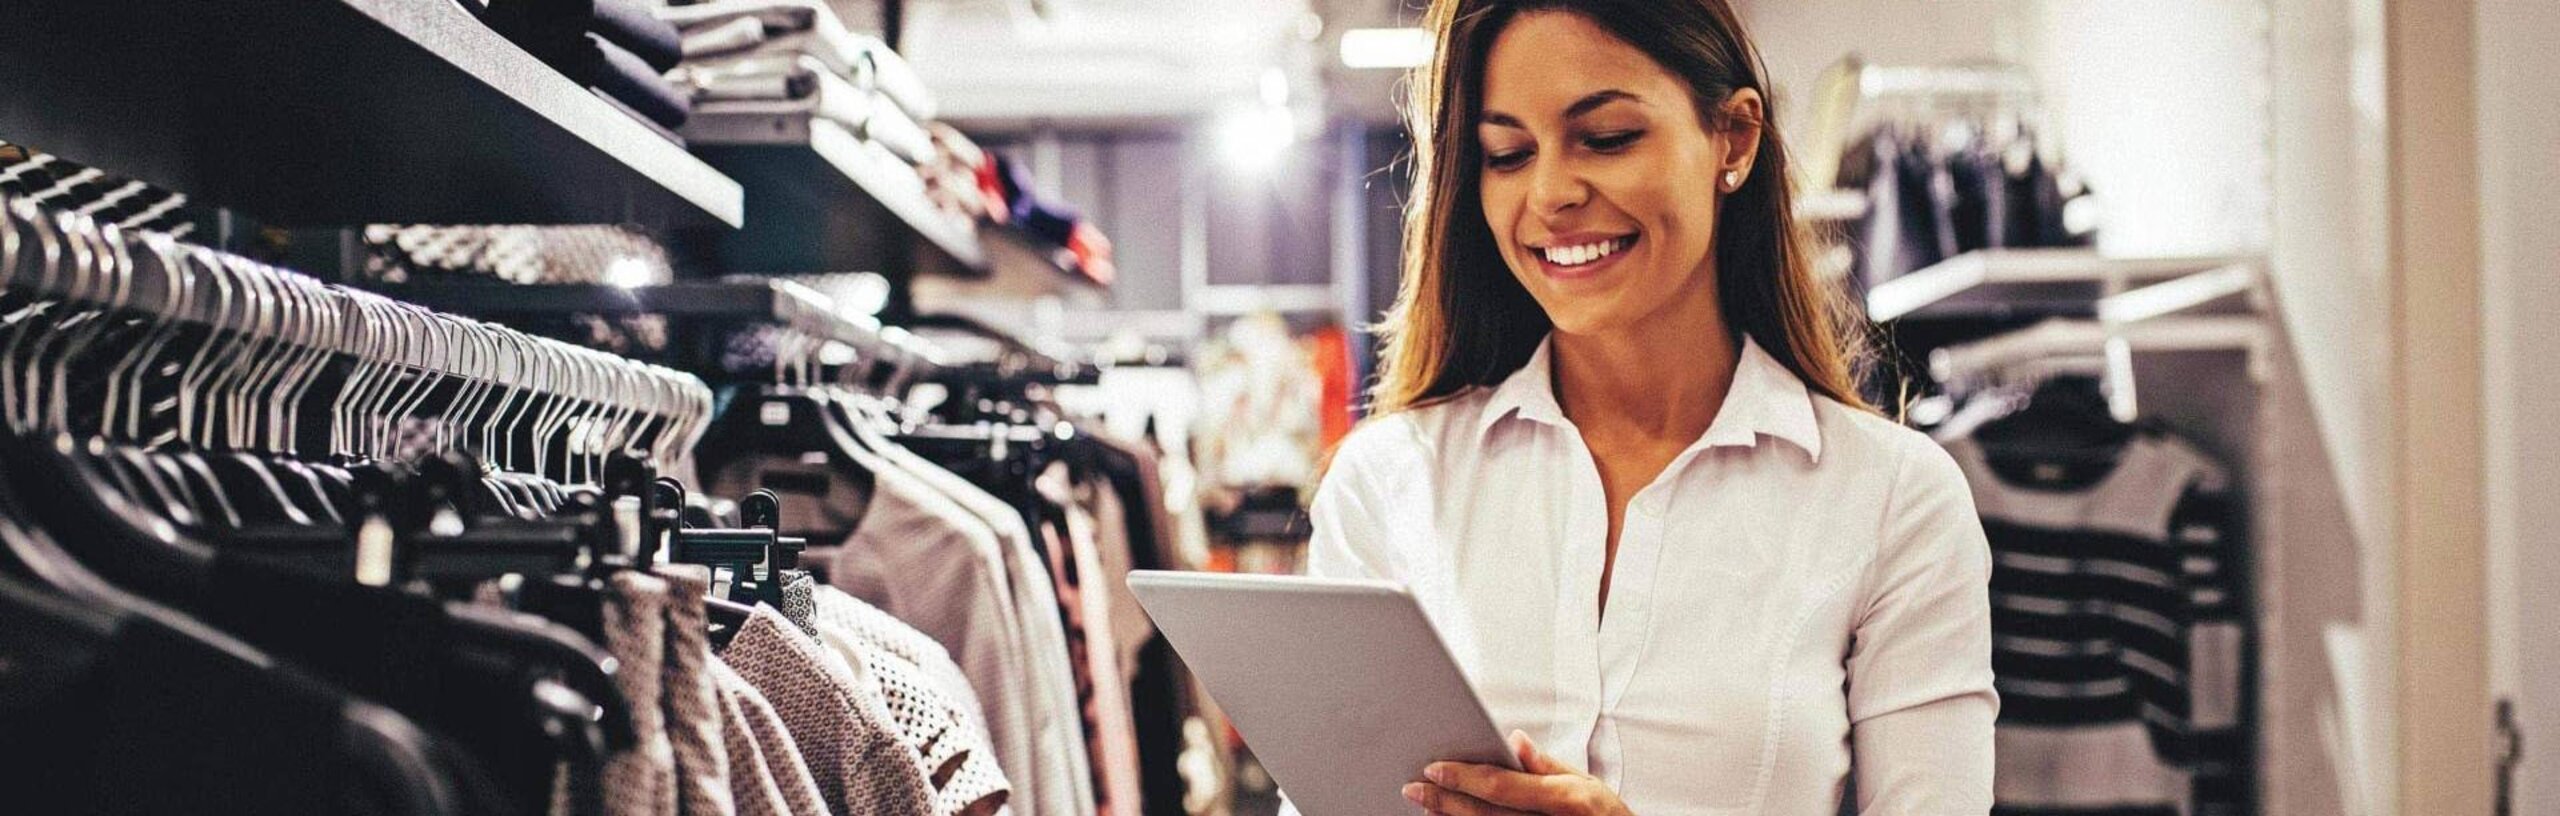 Eine Frau inszeniert die Kleidungsauslage für den Verkauf per App